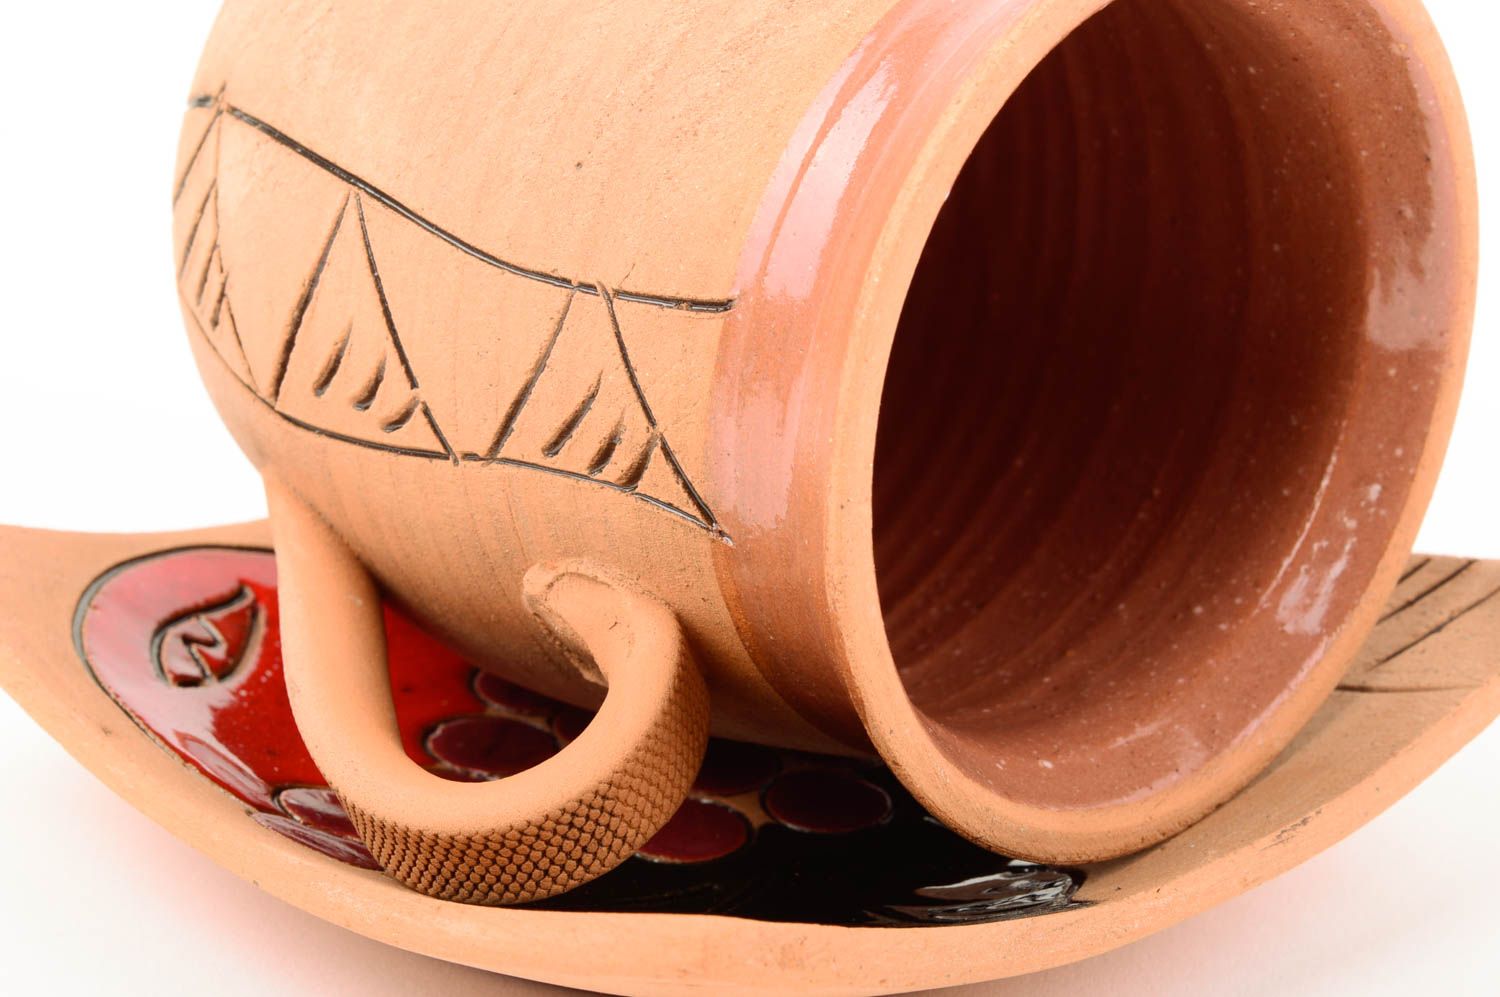 Handmade Keramik Geschirr Küchen Zubehör originelle Geschenke Keramik Tasse bunt foto 3